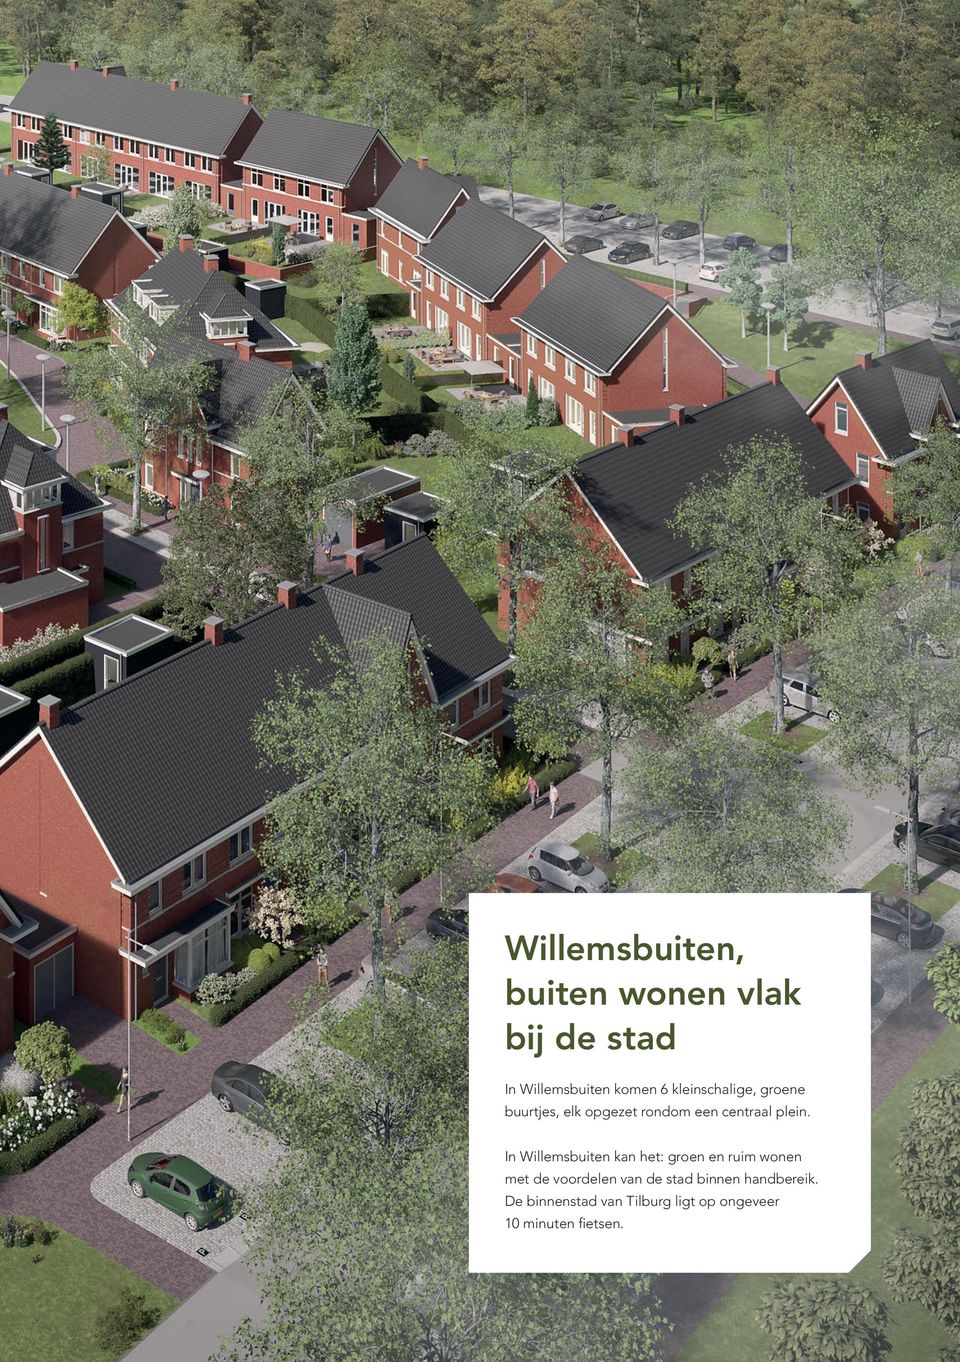 In Willemsbuiten kan het: groen en ruim wonen met de voordelen van de stad